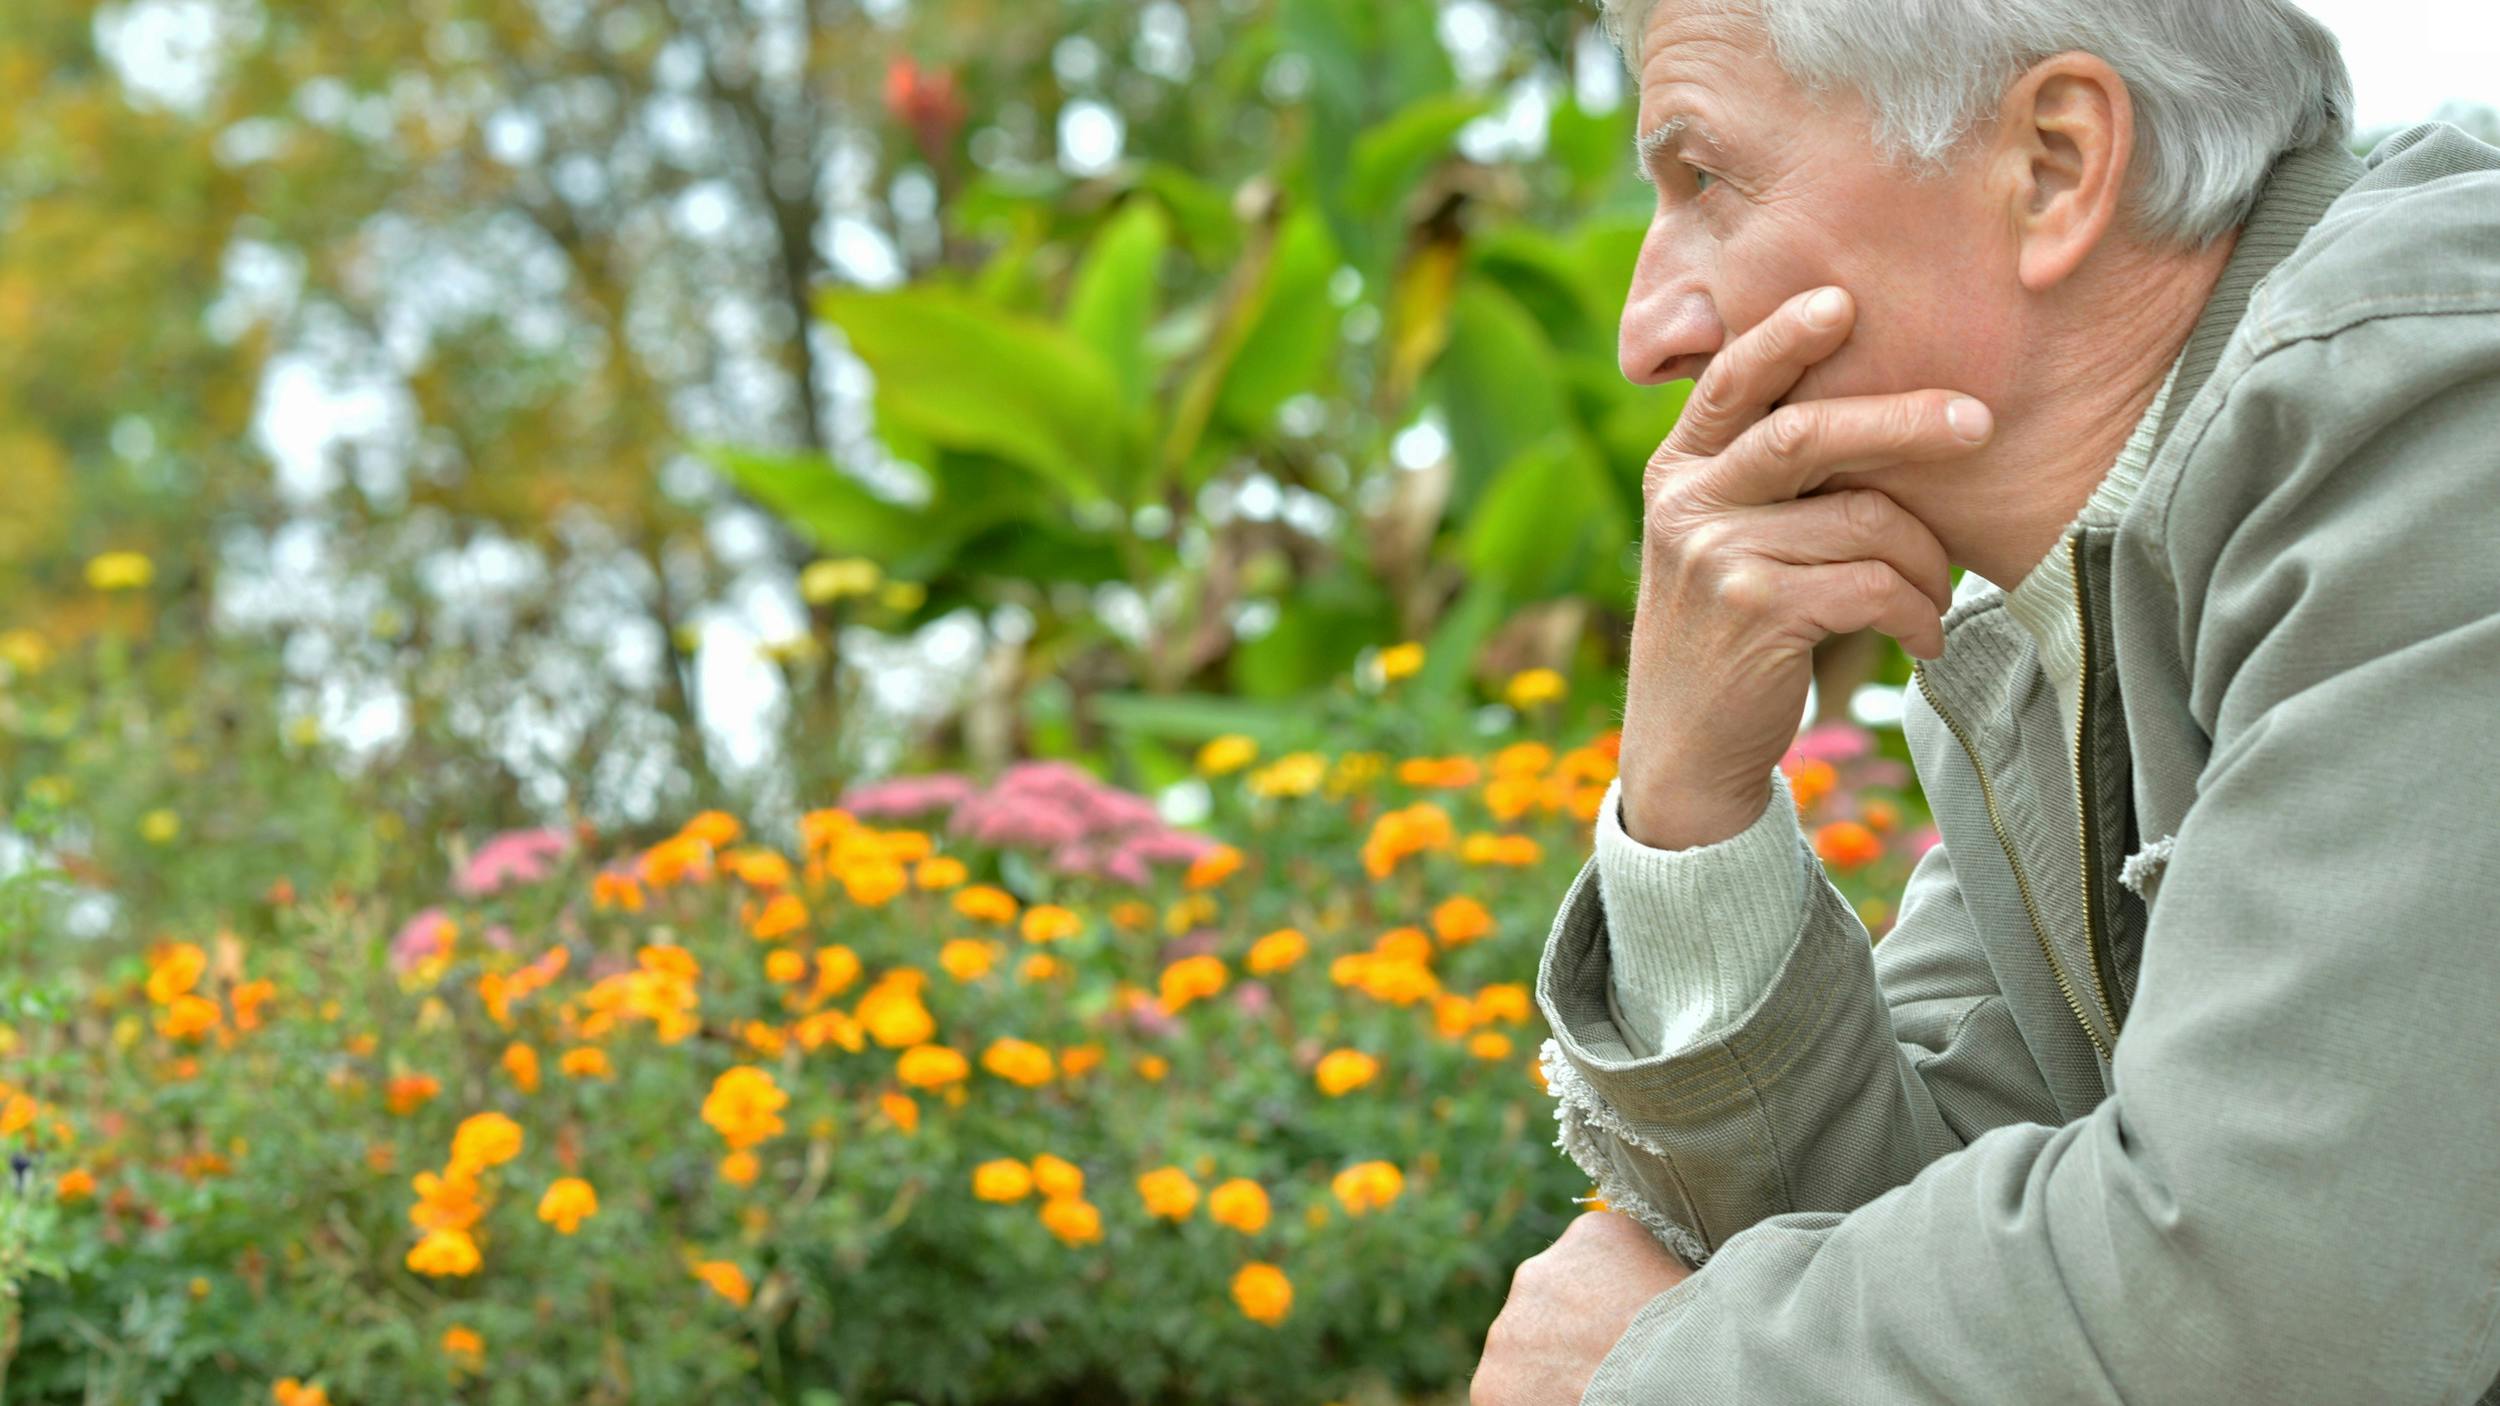 Ældre mand ser trist og eftertænksom frem for sig. Der er farverige blomster i baggrunden.